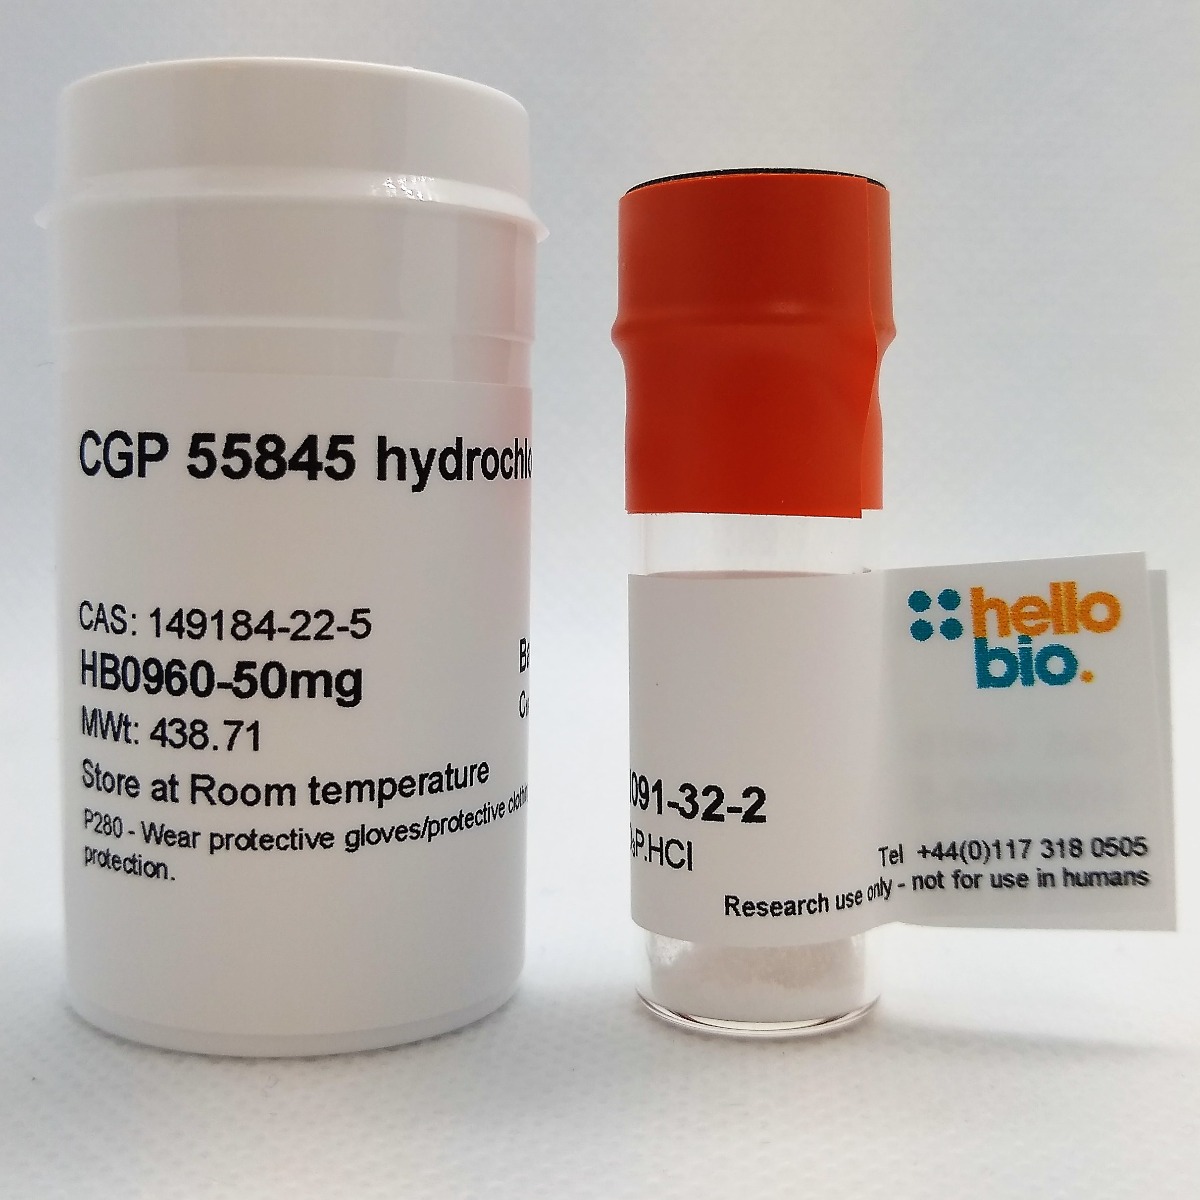 CGP 55845 hydrochloride product vial image | Hello Bio